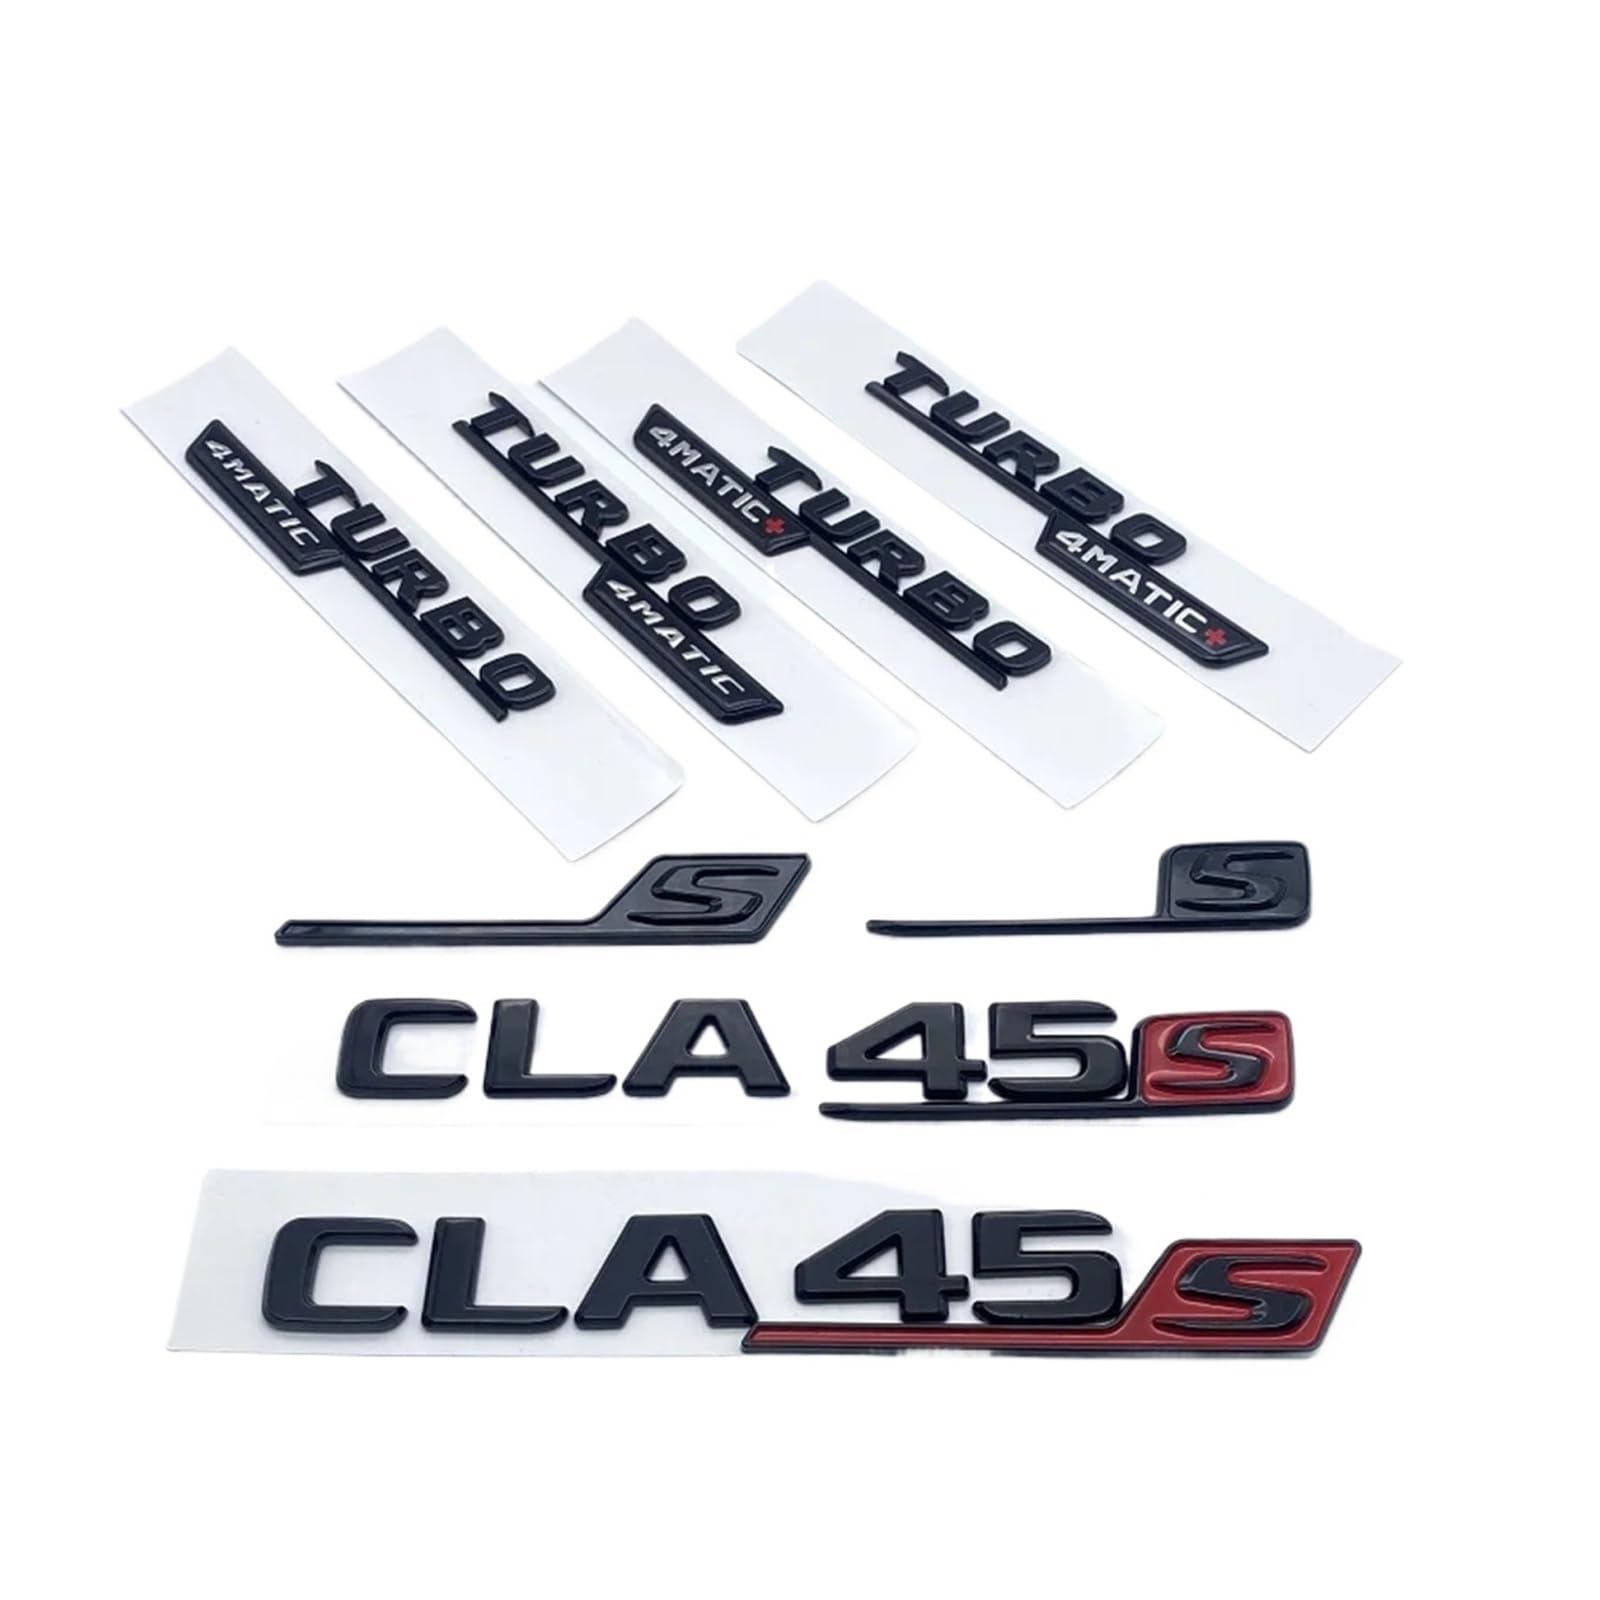 YSRWTBBA Emblem mit glänzenden schwarzen Buchstaben und Zahlen, CLA45, CLA45S Turbo 4matic, kompatibel mit Kofferraum, Heckklappe, C118, W117, Logo-Aufkleber, einfach abziehen von YSRWTBBA